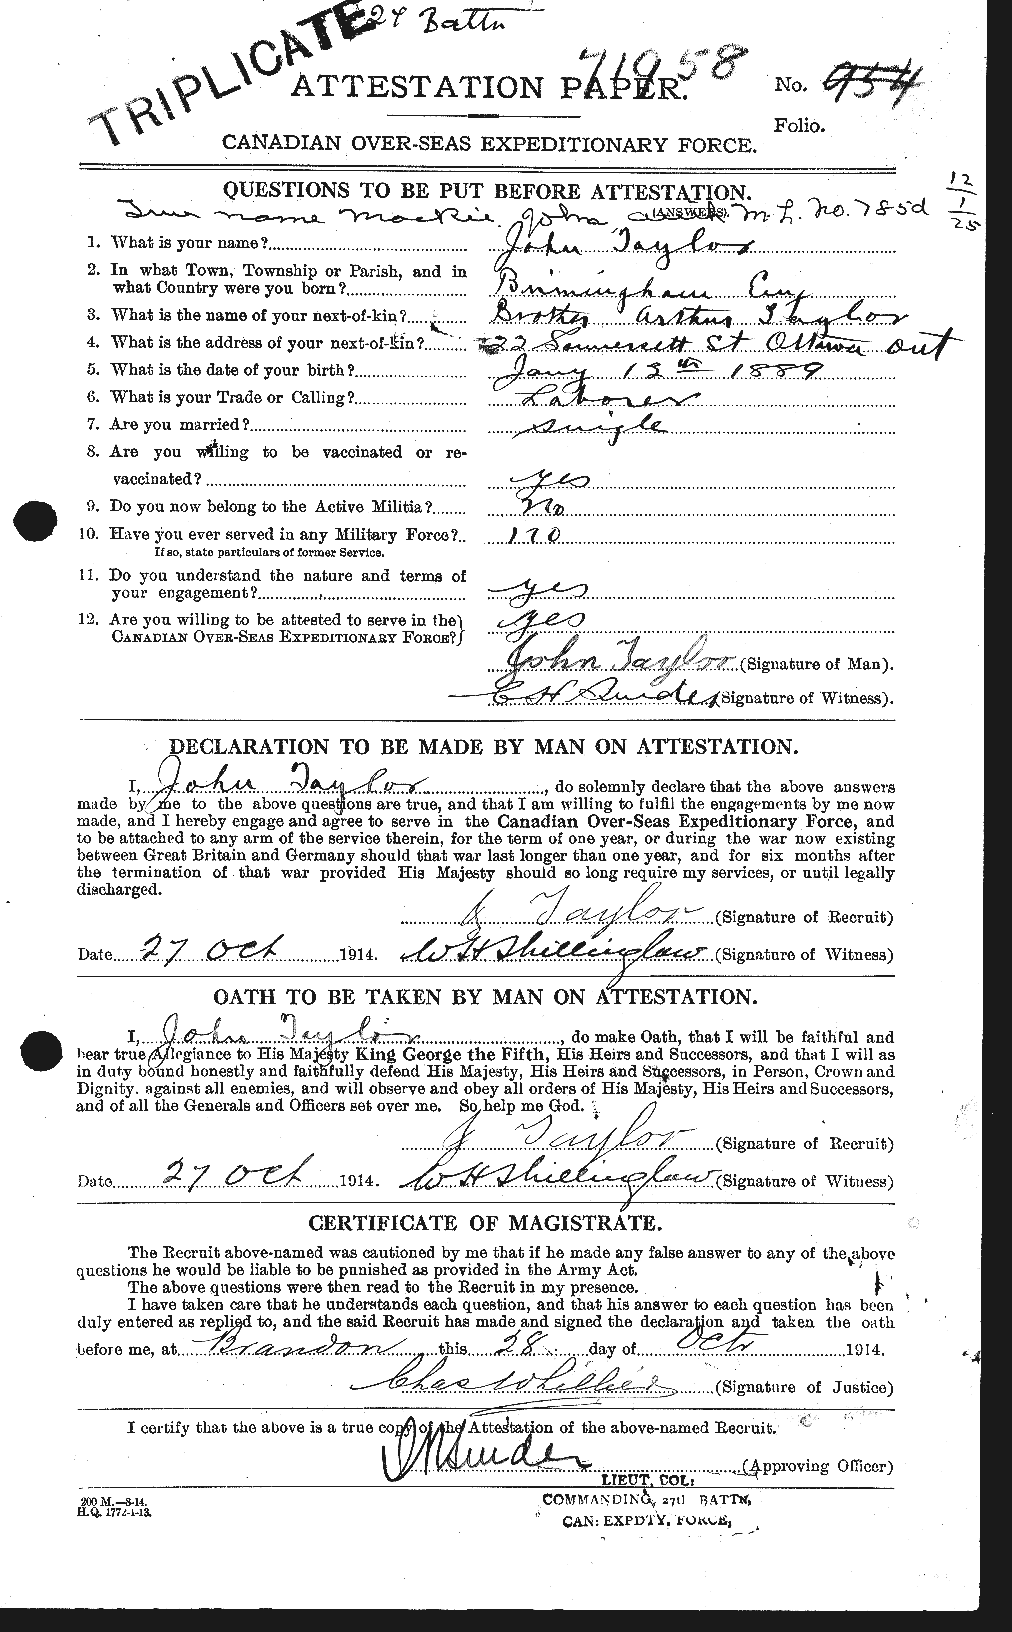 Dossiers du Personnel de la Première Guerre mondiale - CEC 626979a